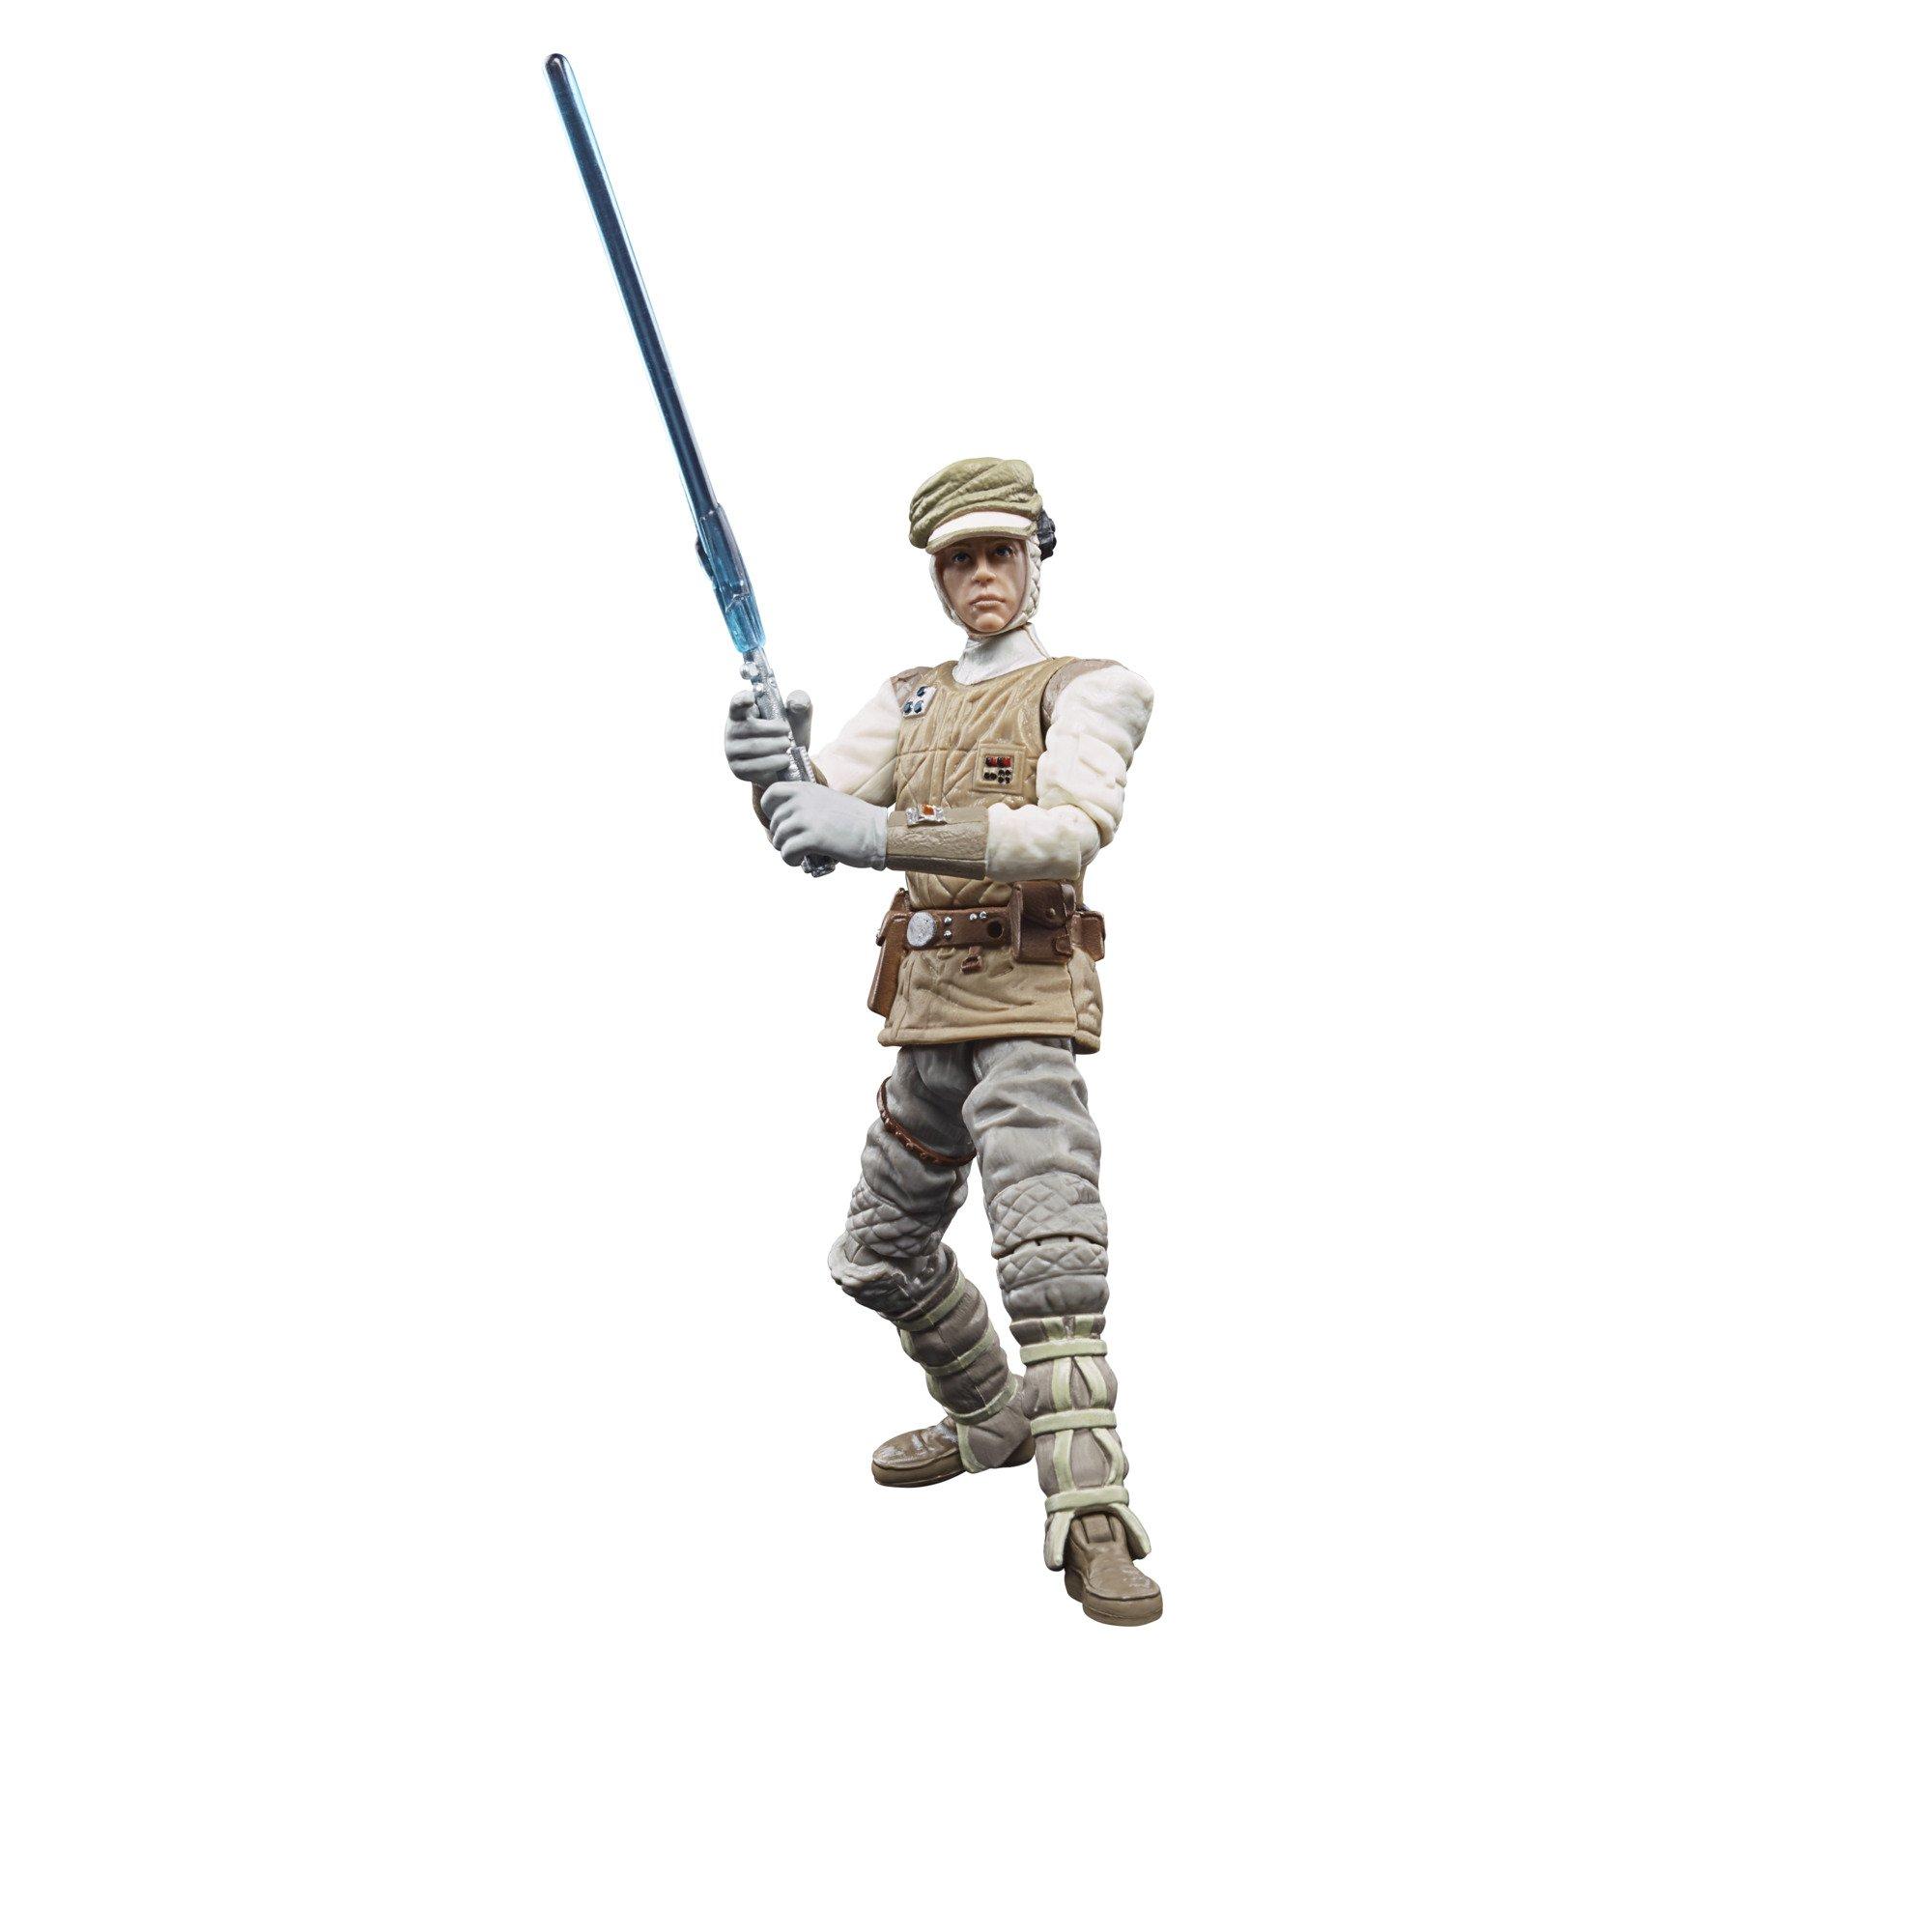 Hasbro Star Wars Luke Skywalker The Empire Strikes Back Action Figure for sale online